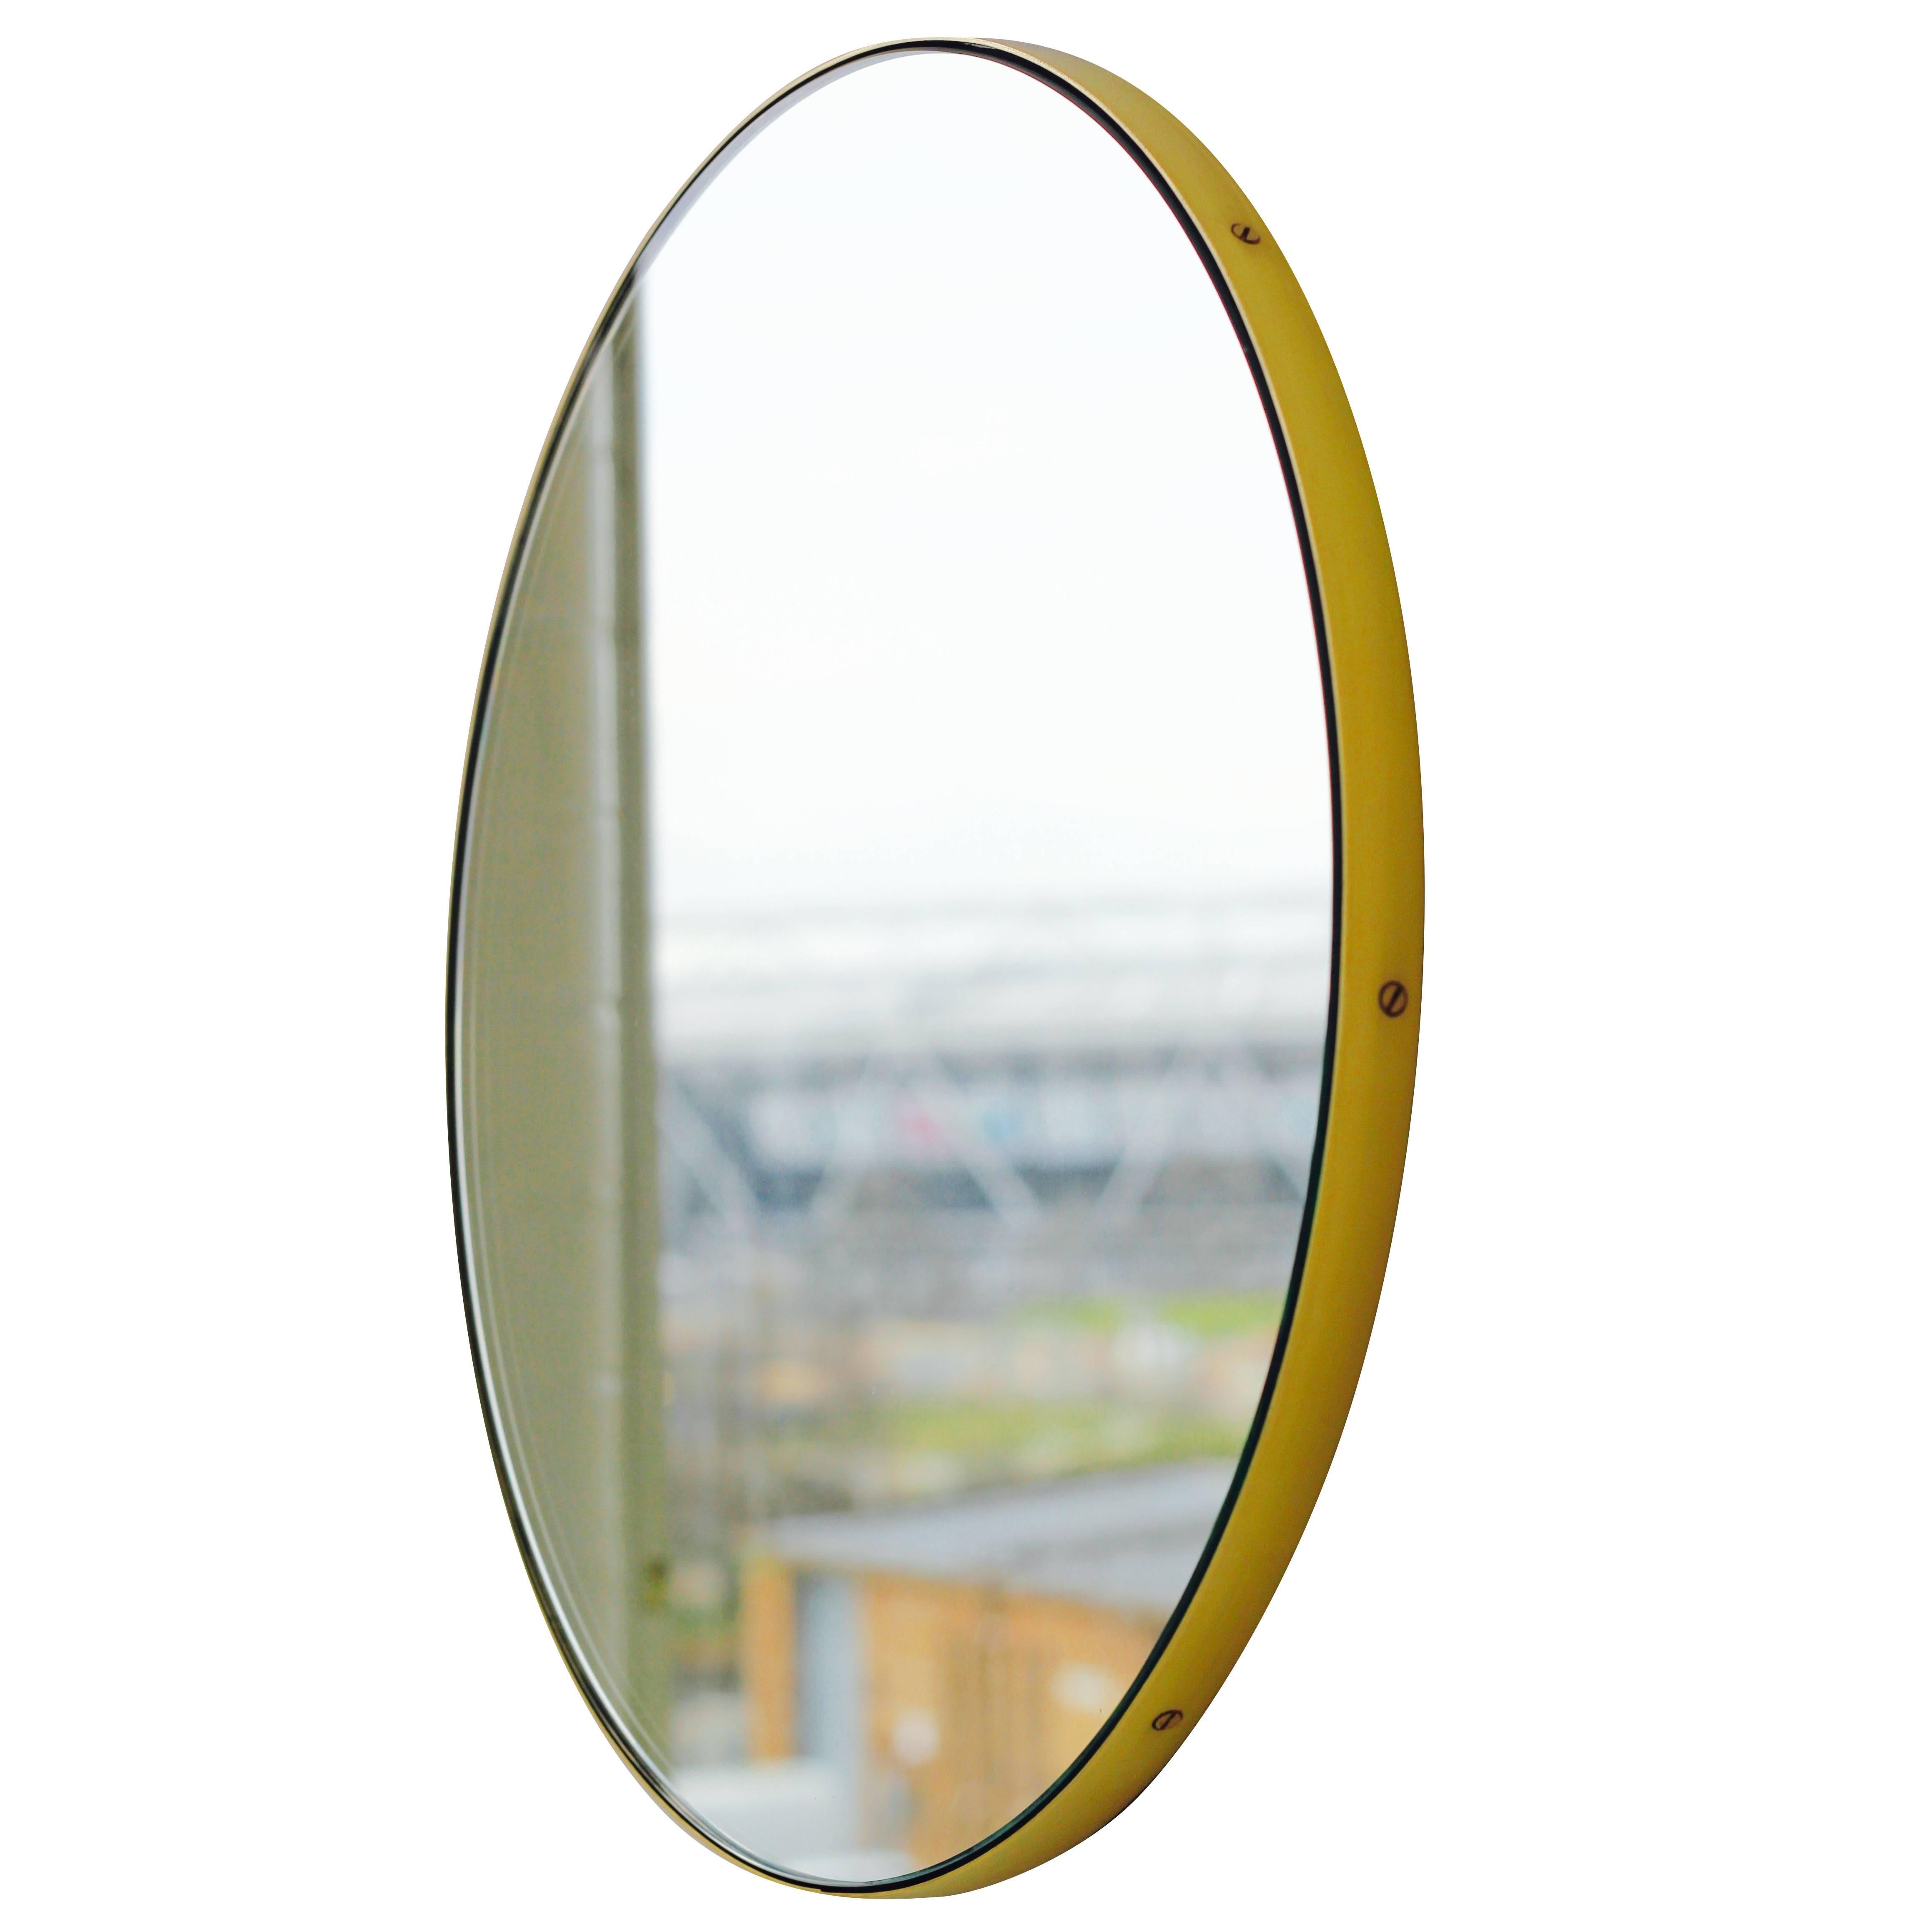 Orbis Minimalist Round Mirror with a Brass Frame, Large